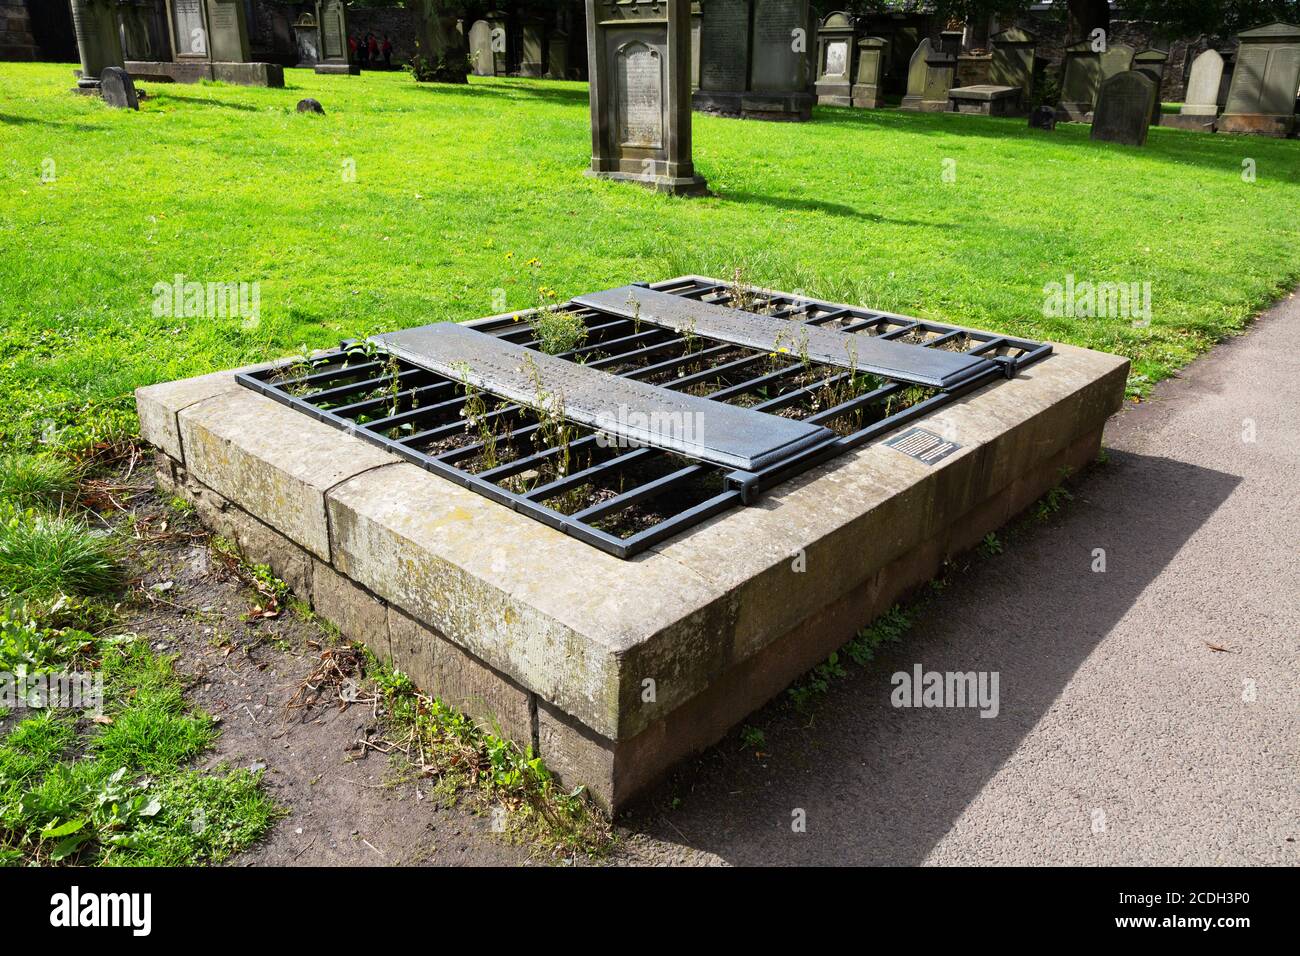 A Mortsafe - un mécanisme de protection des tombes contre les tombes incarnée par Burke et Hare dans les années 1800 ; Greyfriars kirkyard, Edinburgh Scotland Royaume-Uni Banque D'Images